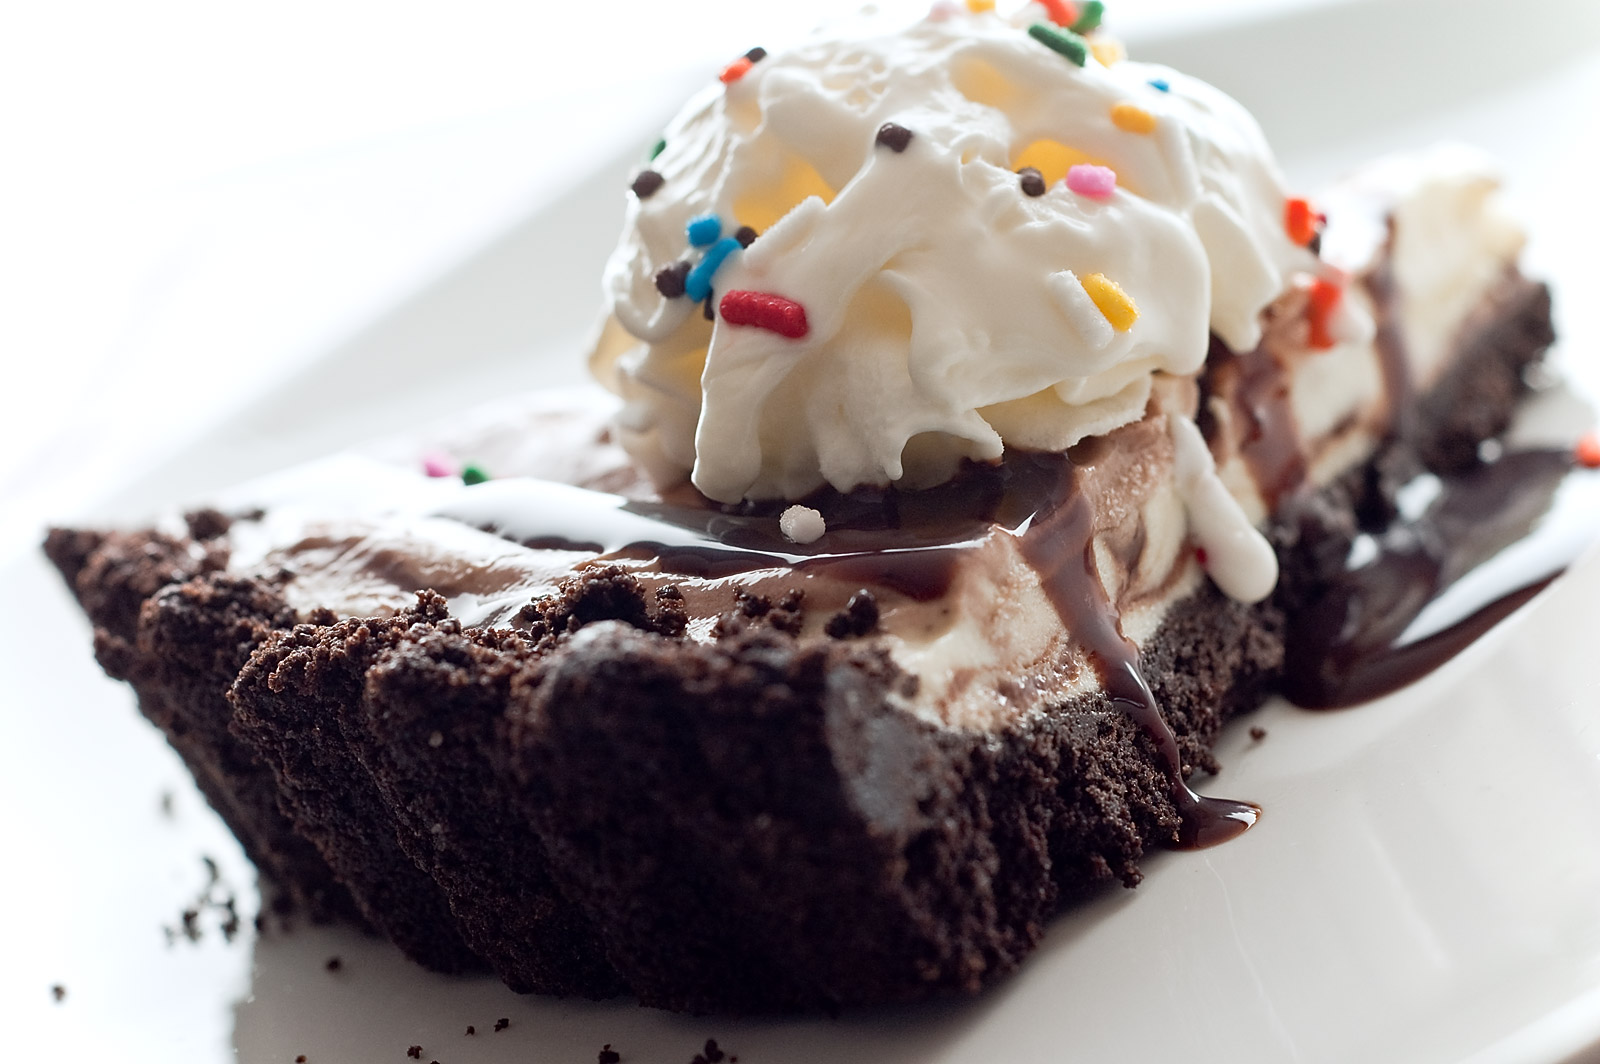 cake-batter-ice-cream-tart.jpg